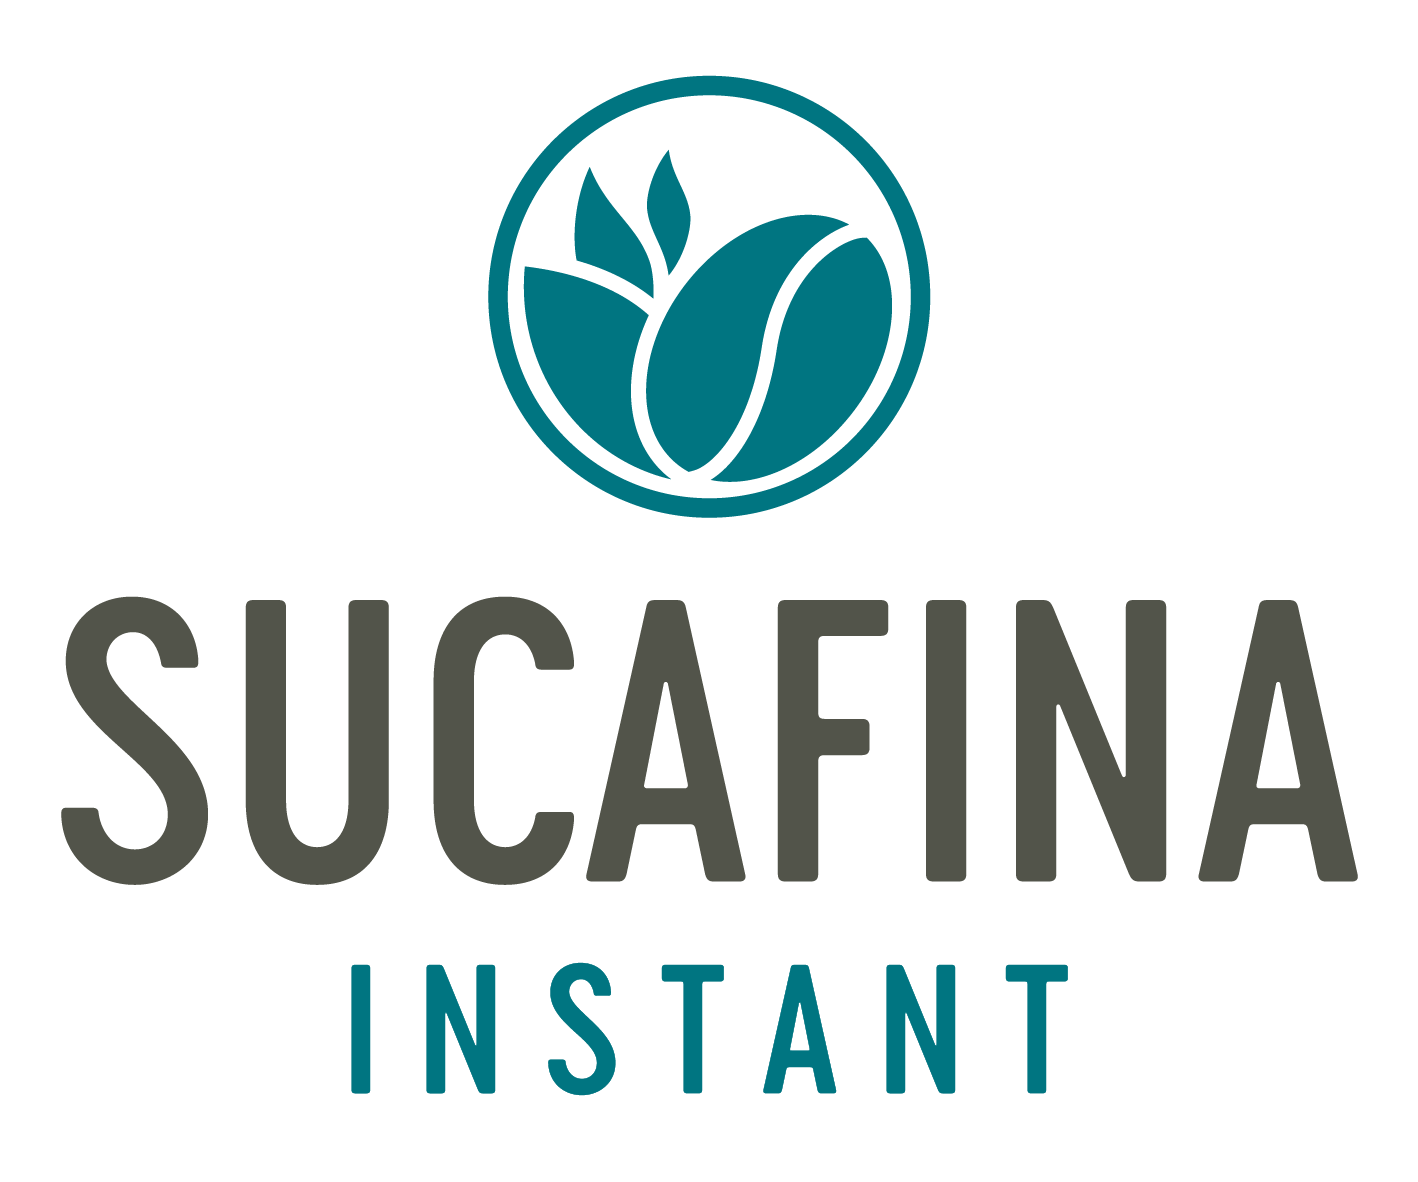 Sucafina UK Ltd